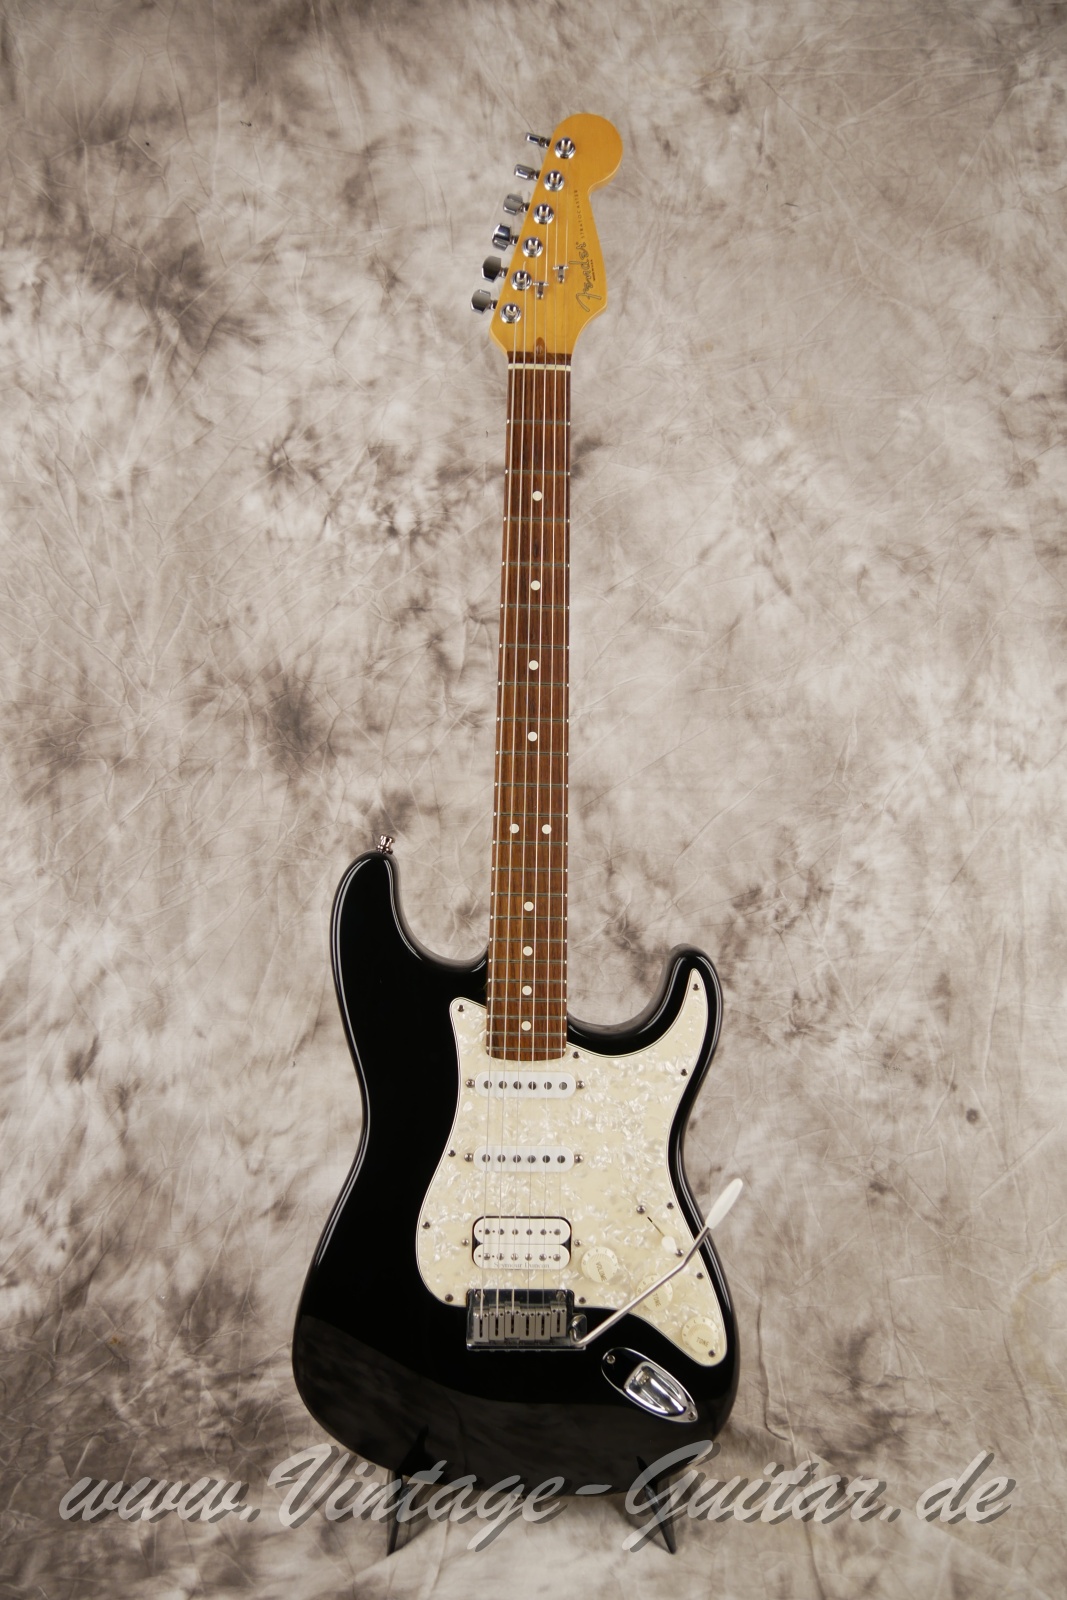 Fender_Stratocaster_US_Lonestar_1997_original_case_black_humbucker-001.jpg